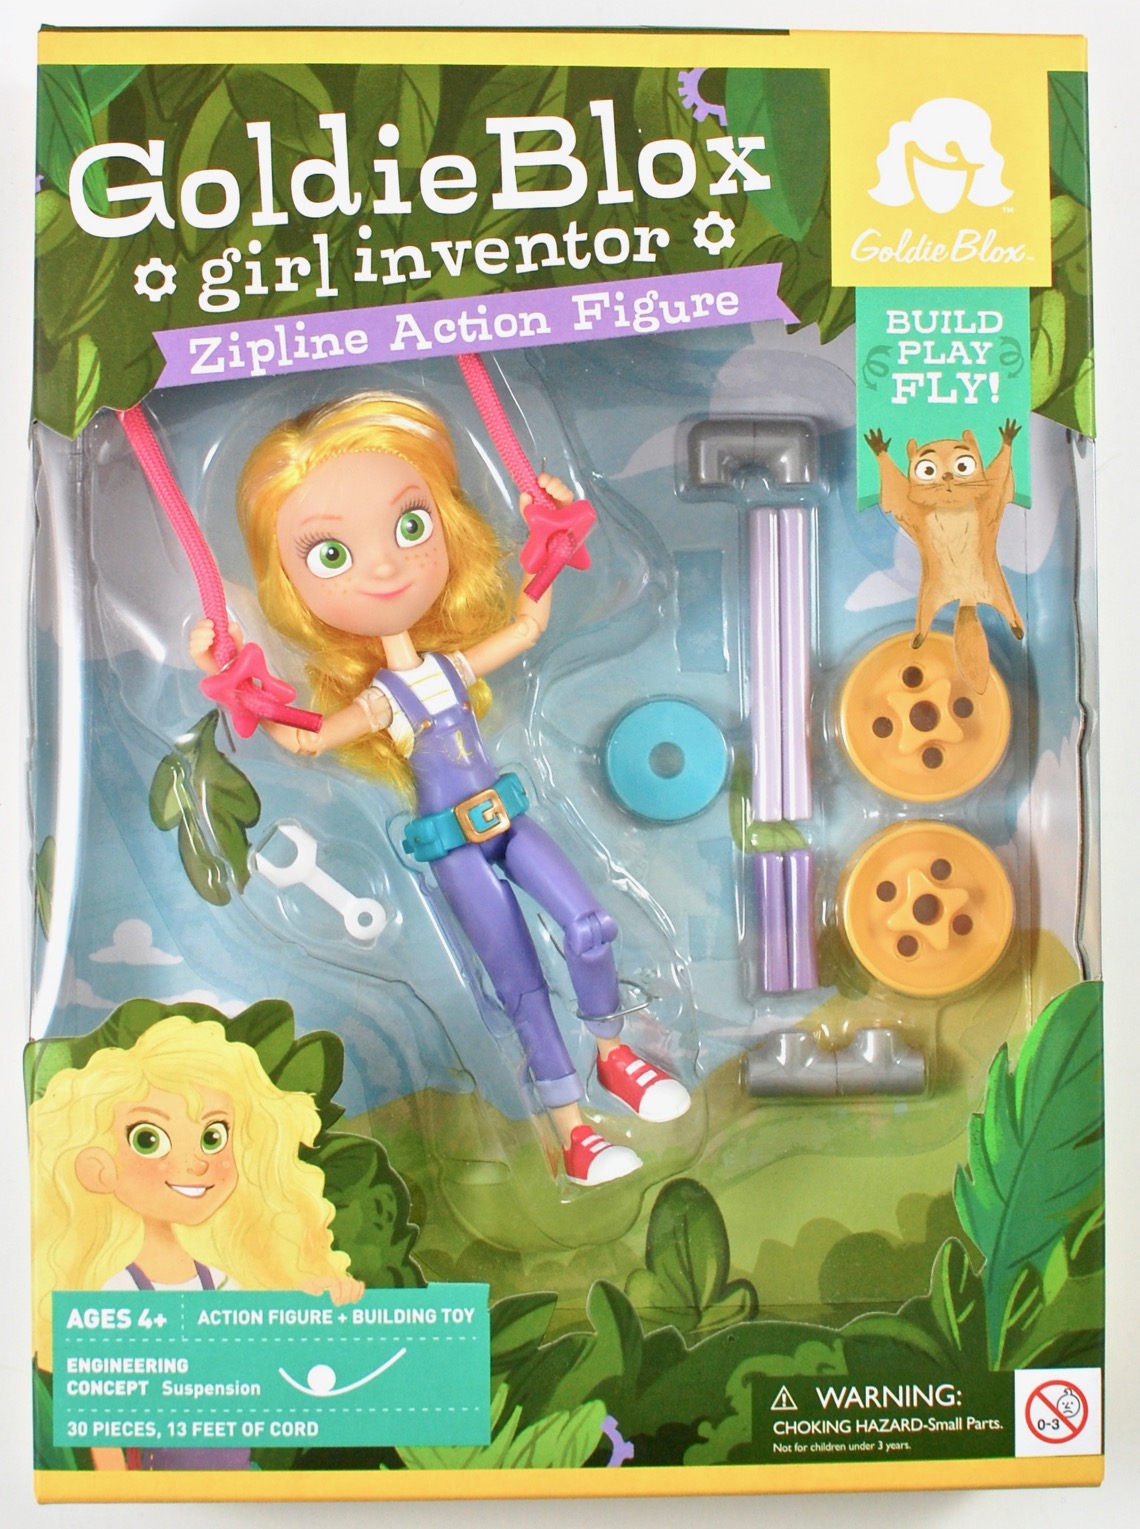 goldieblox girl inventor zipline action figure